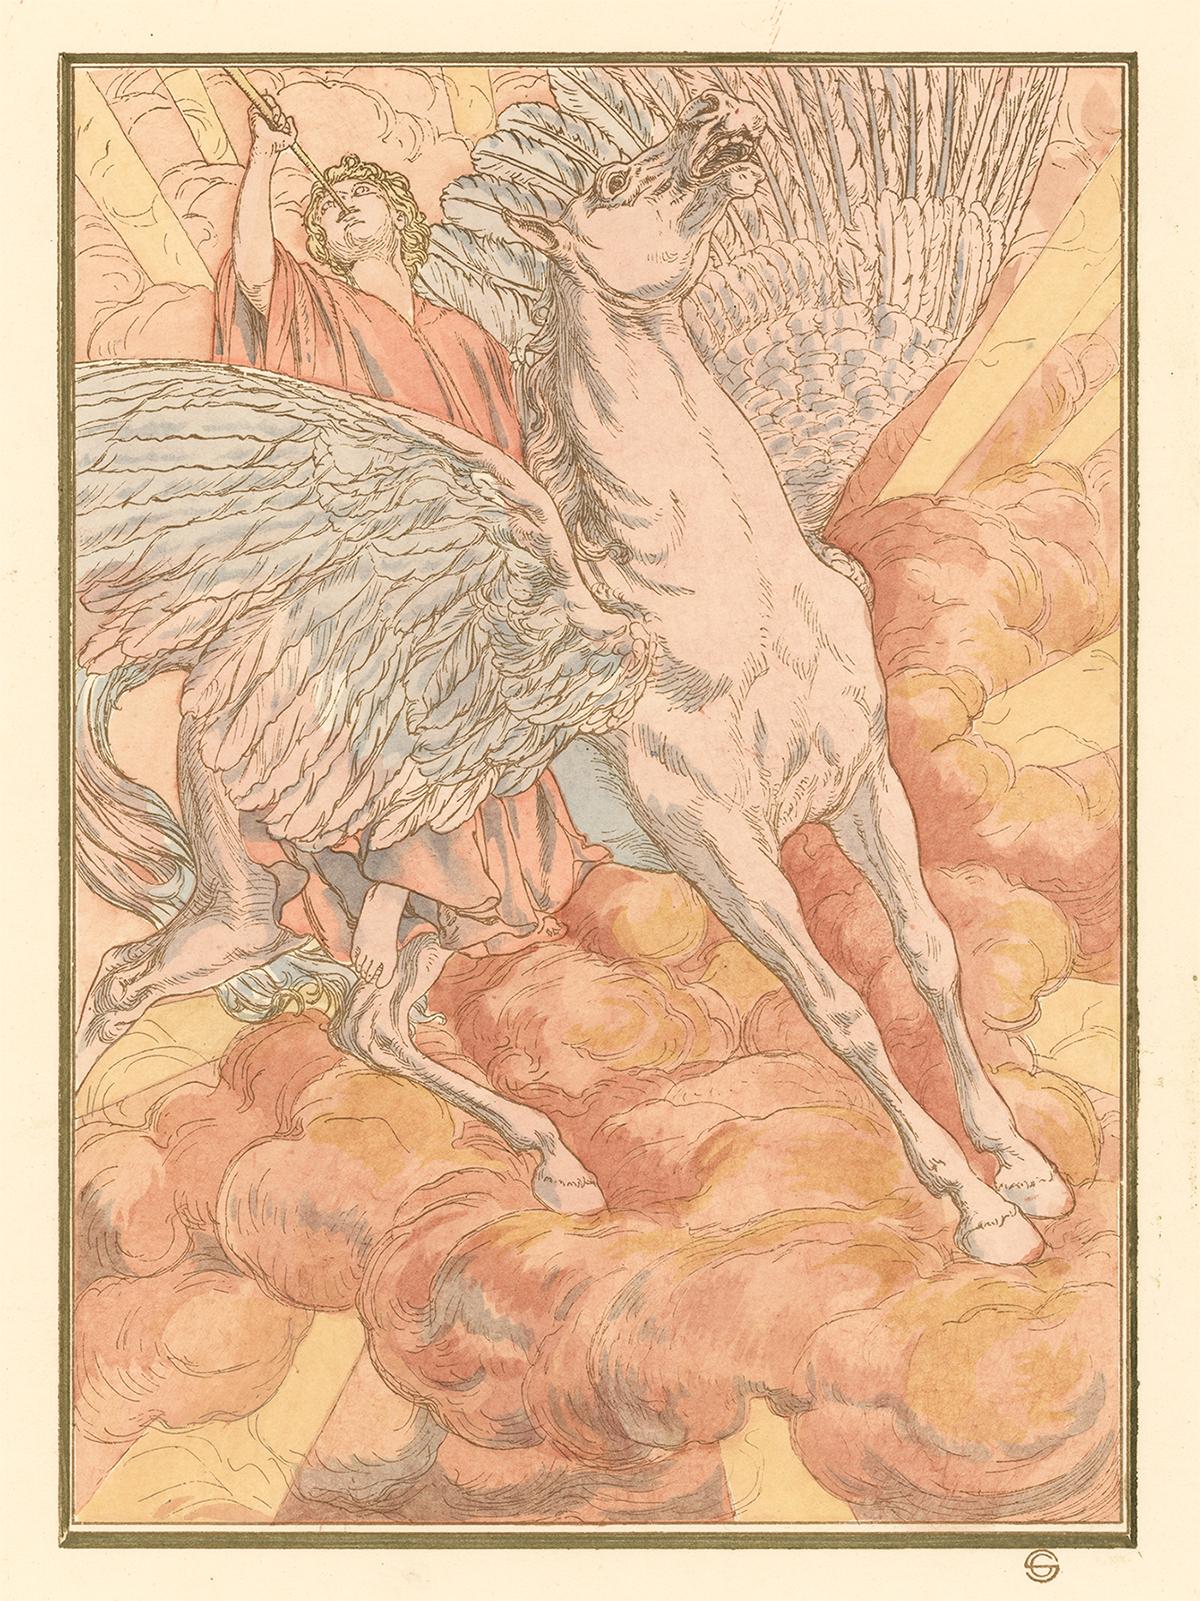 Pferdeschwan, Hésperus von Carlos Schwabe, symbolistische Fantasielithografie, 1904